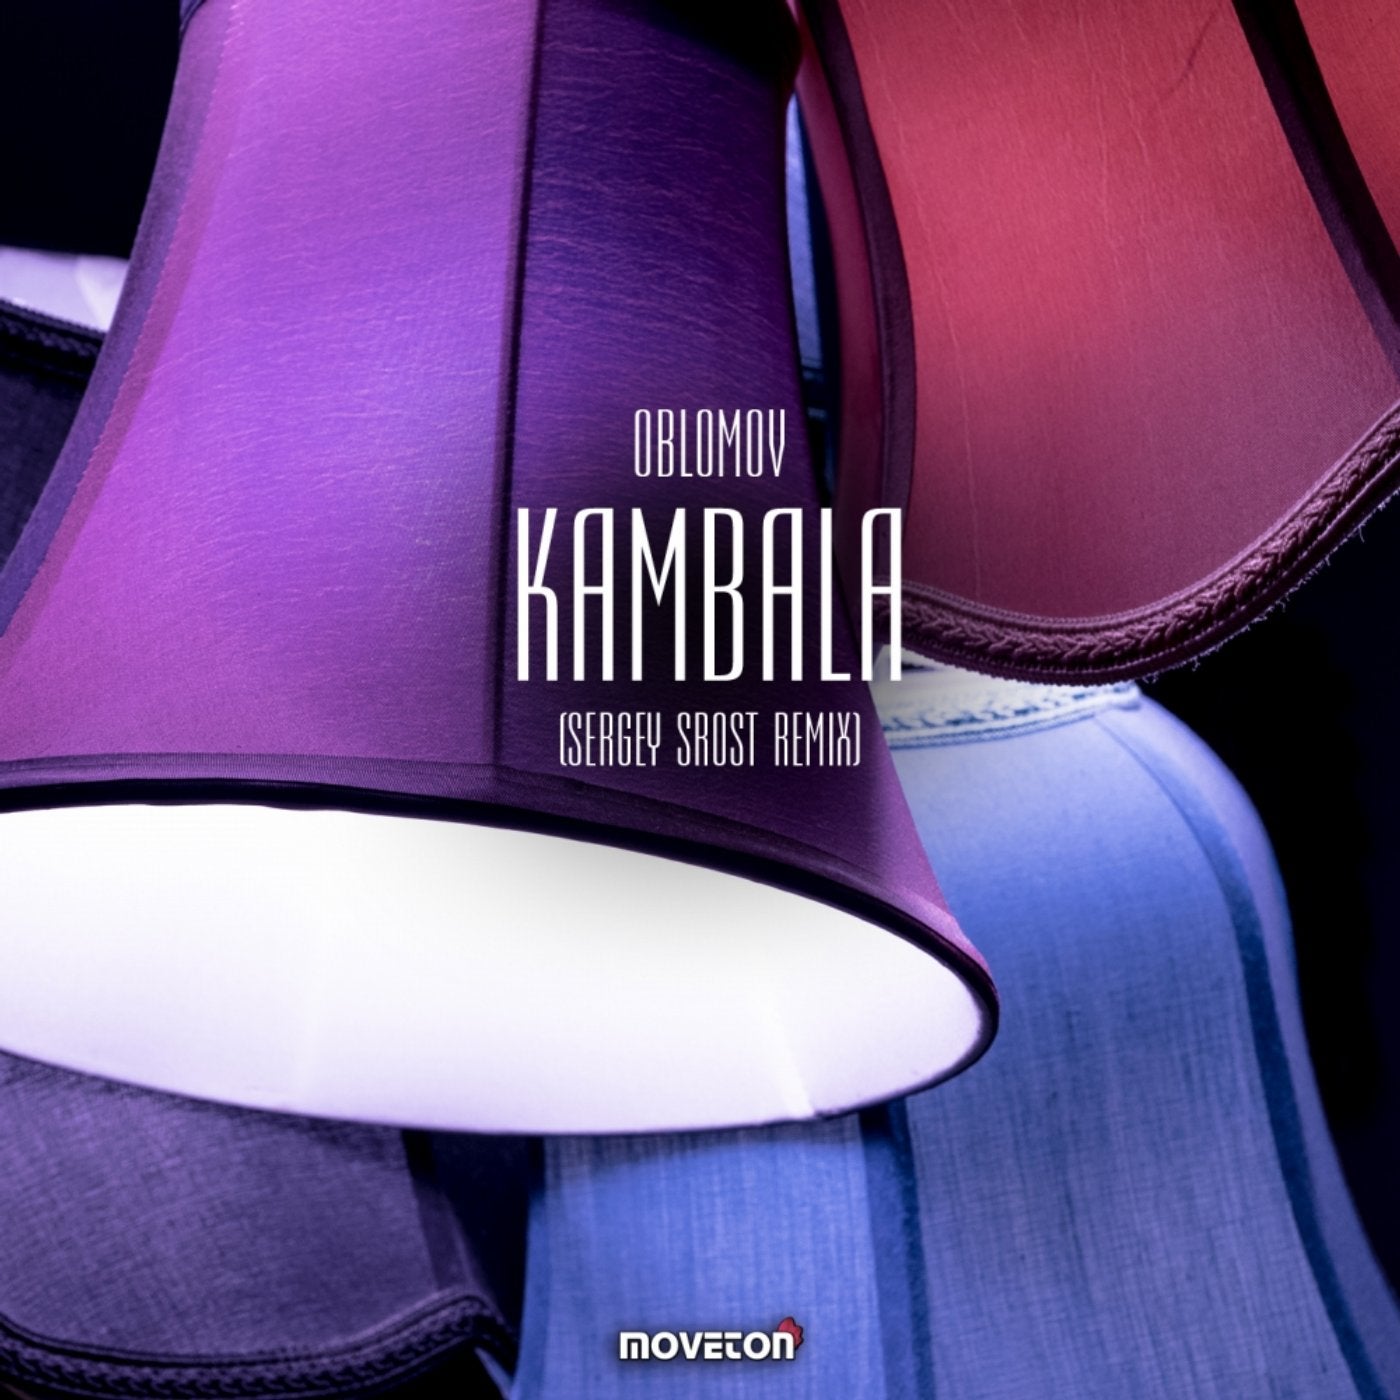 Kambala (Sergey Srost Remix)